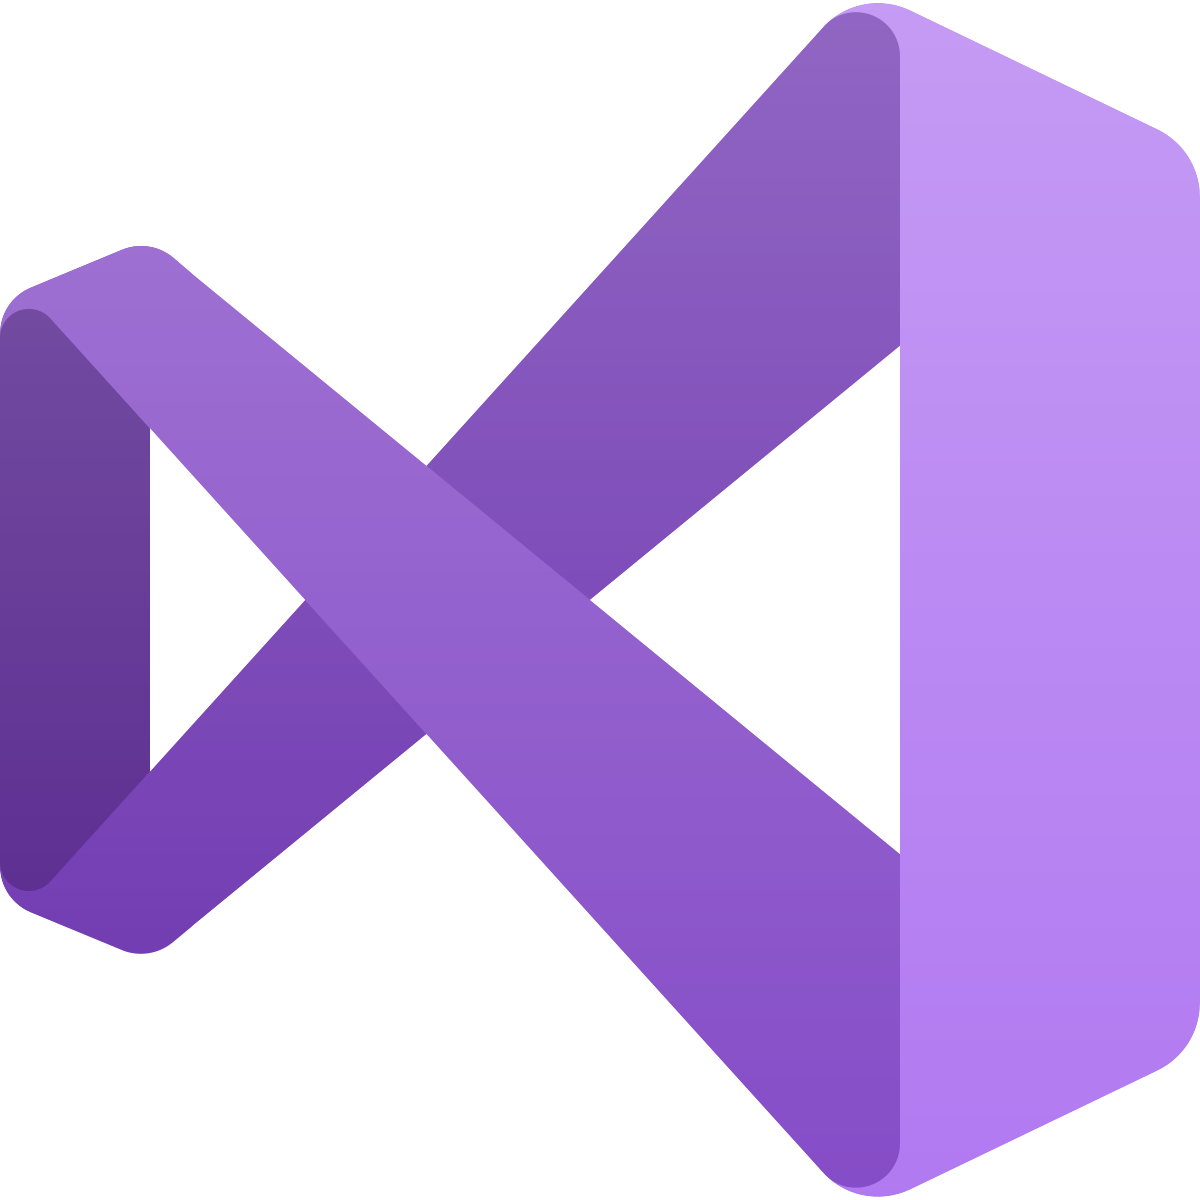 تحميل فيجوال بيسك كامل: برنامج Visual Basic v16.9 آخر إصدار 2019 (رابط مباشر)